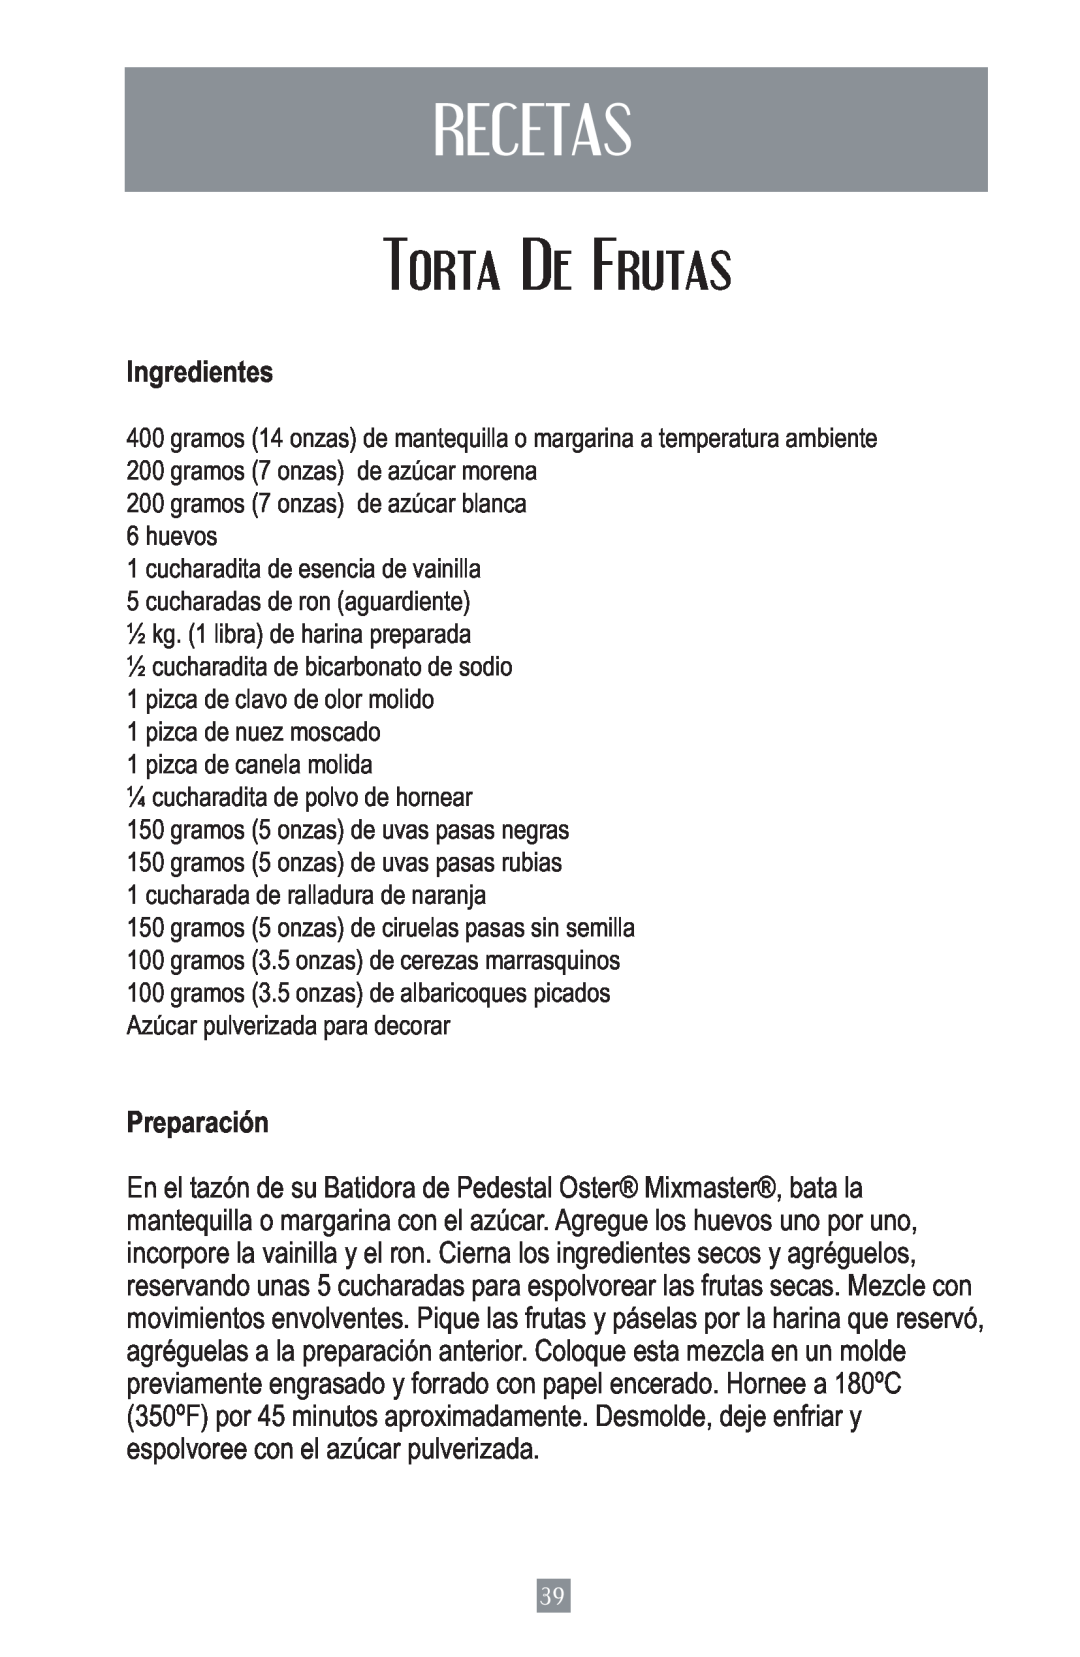 Oster 2700 instruction manual Recetas, Torta De Frutas, Ingredientes, Preparación 